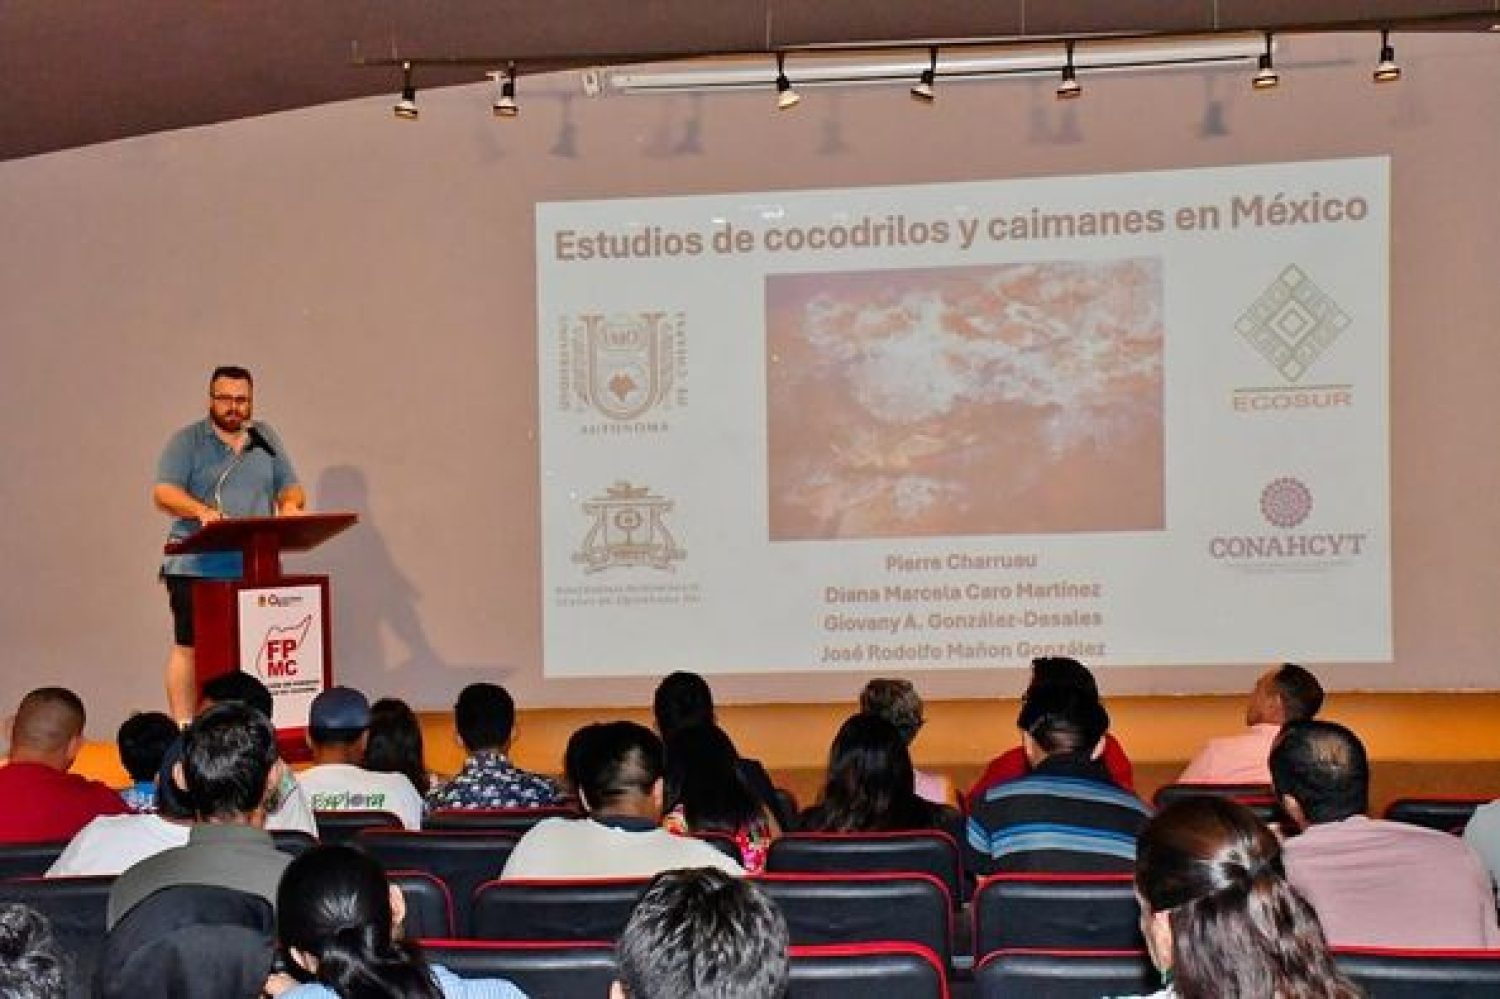 La Fundación de Parques y Museos impartió la ponencia “Estudio de Cocodrilos y Caimanes en México”